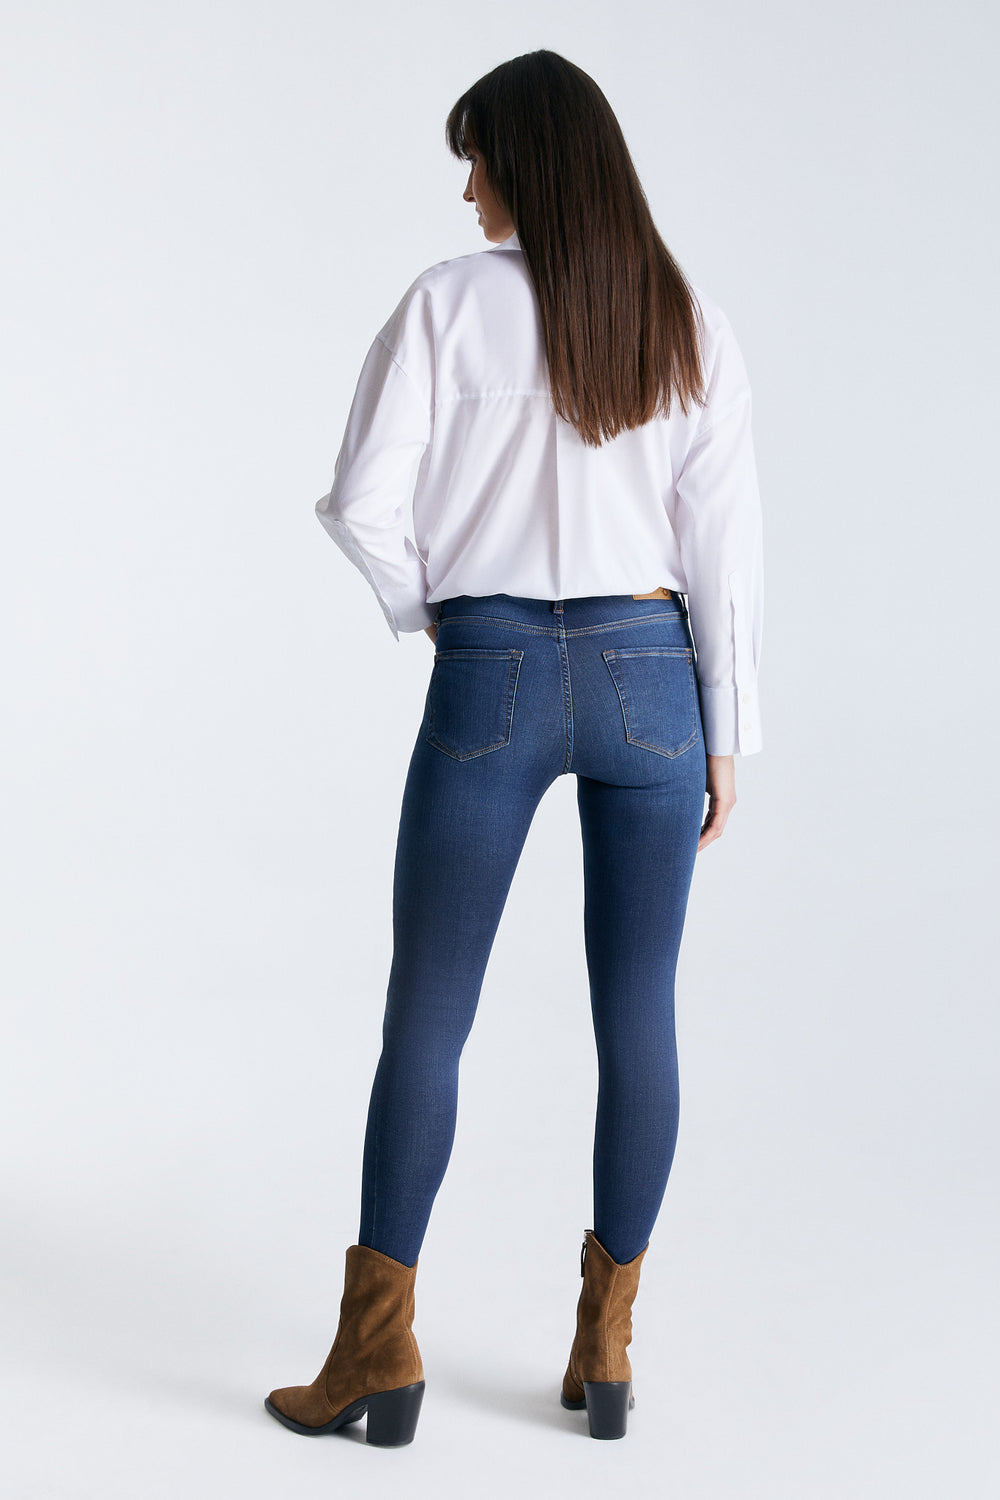 SOPHIA High Waist Super Skinny Jeans dark VT blue